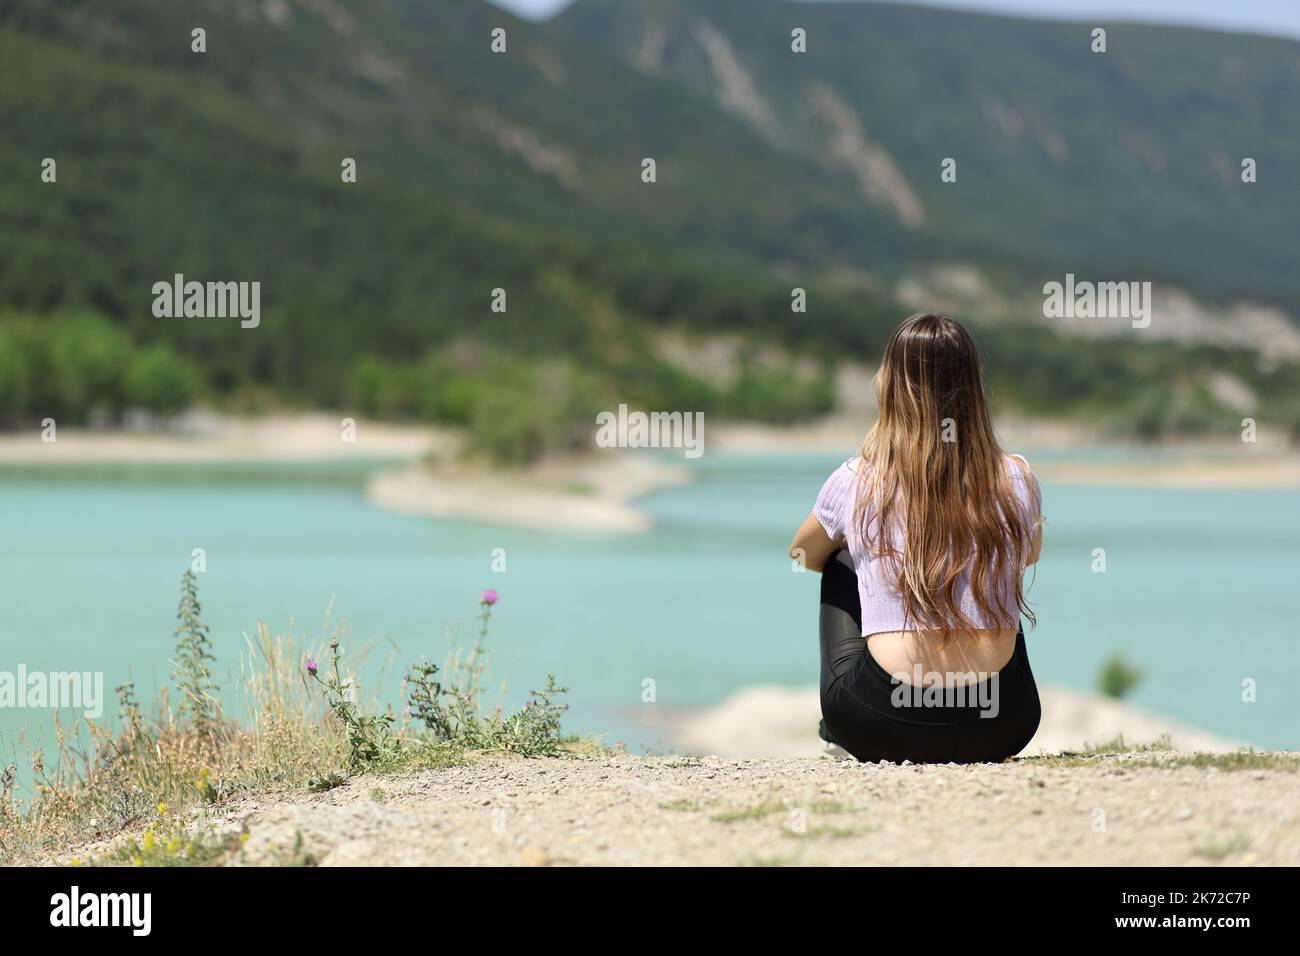 Rückansicht einer Frau, die einen schönen See betrachtete Stockfoto